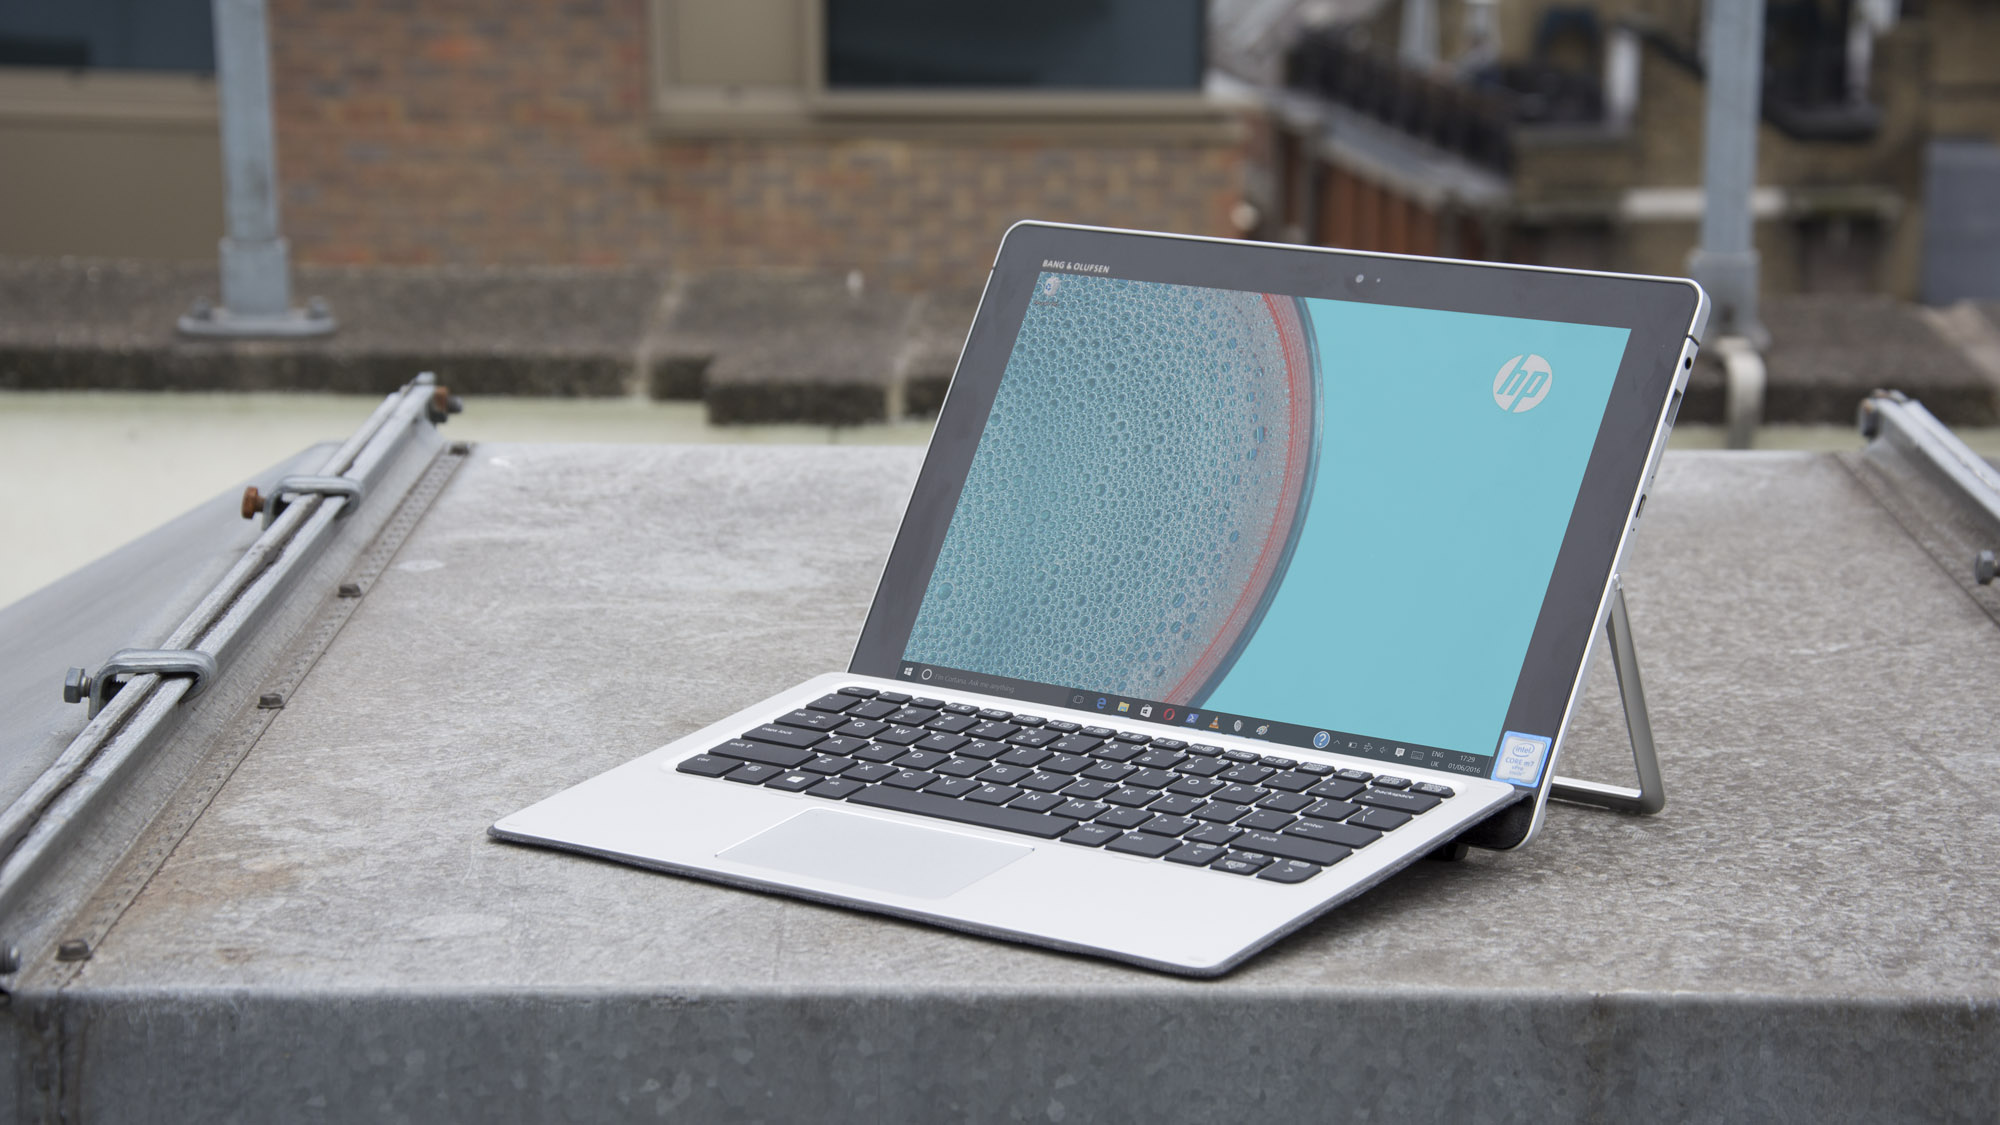 HP Elite x2 recension: Slår Surface Pro 4 på vissa sätt (men inte på andra)